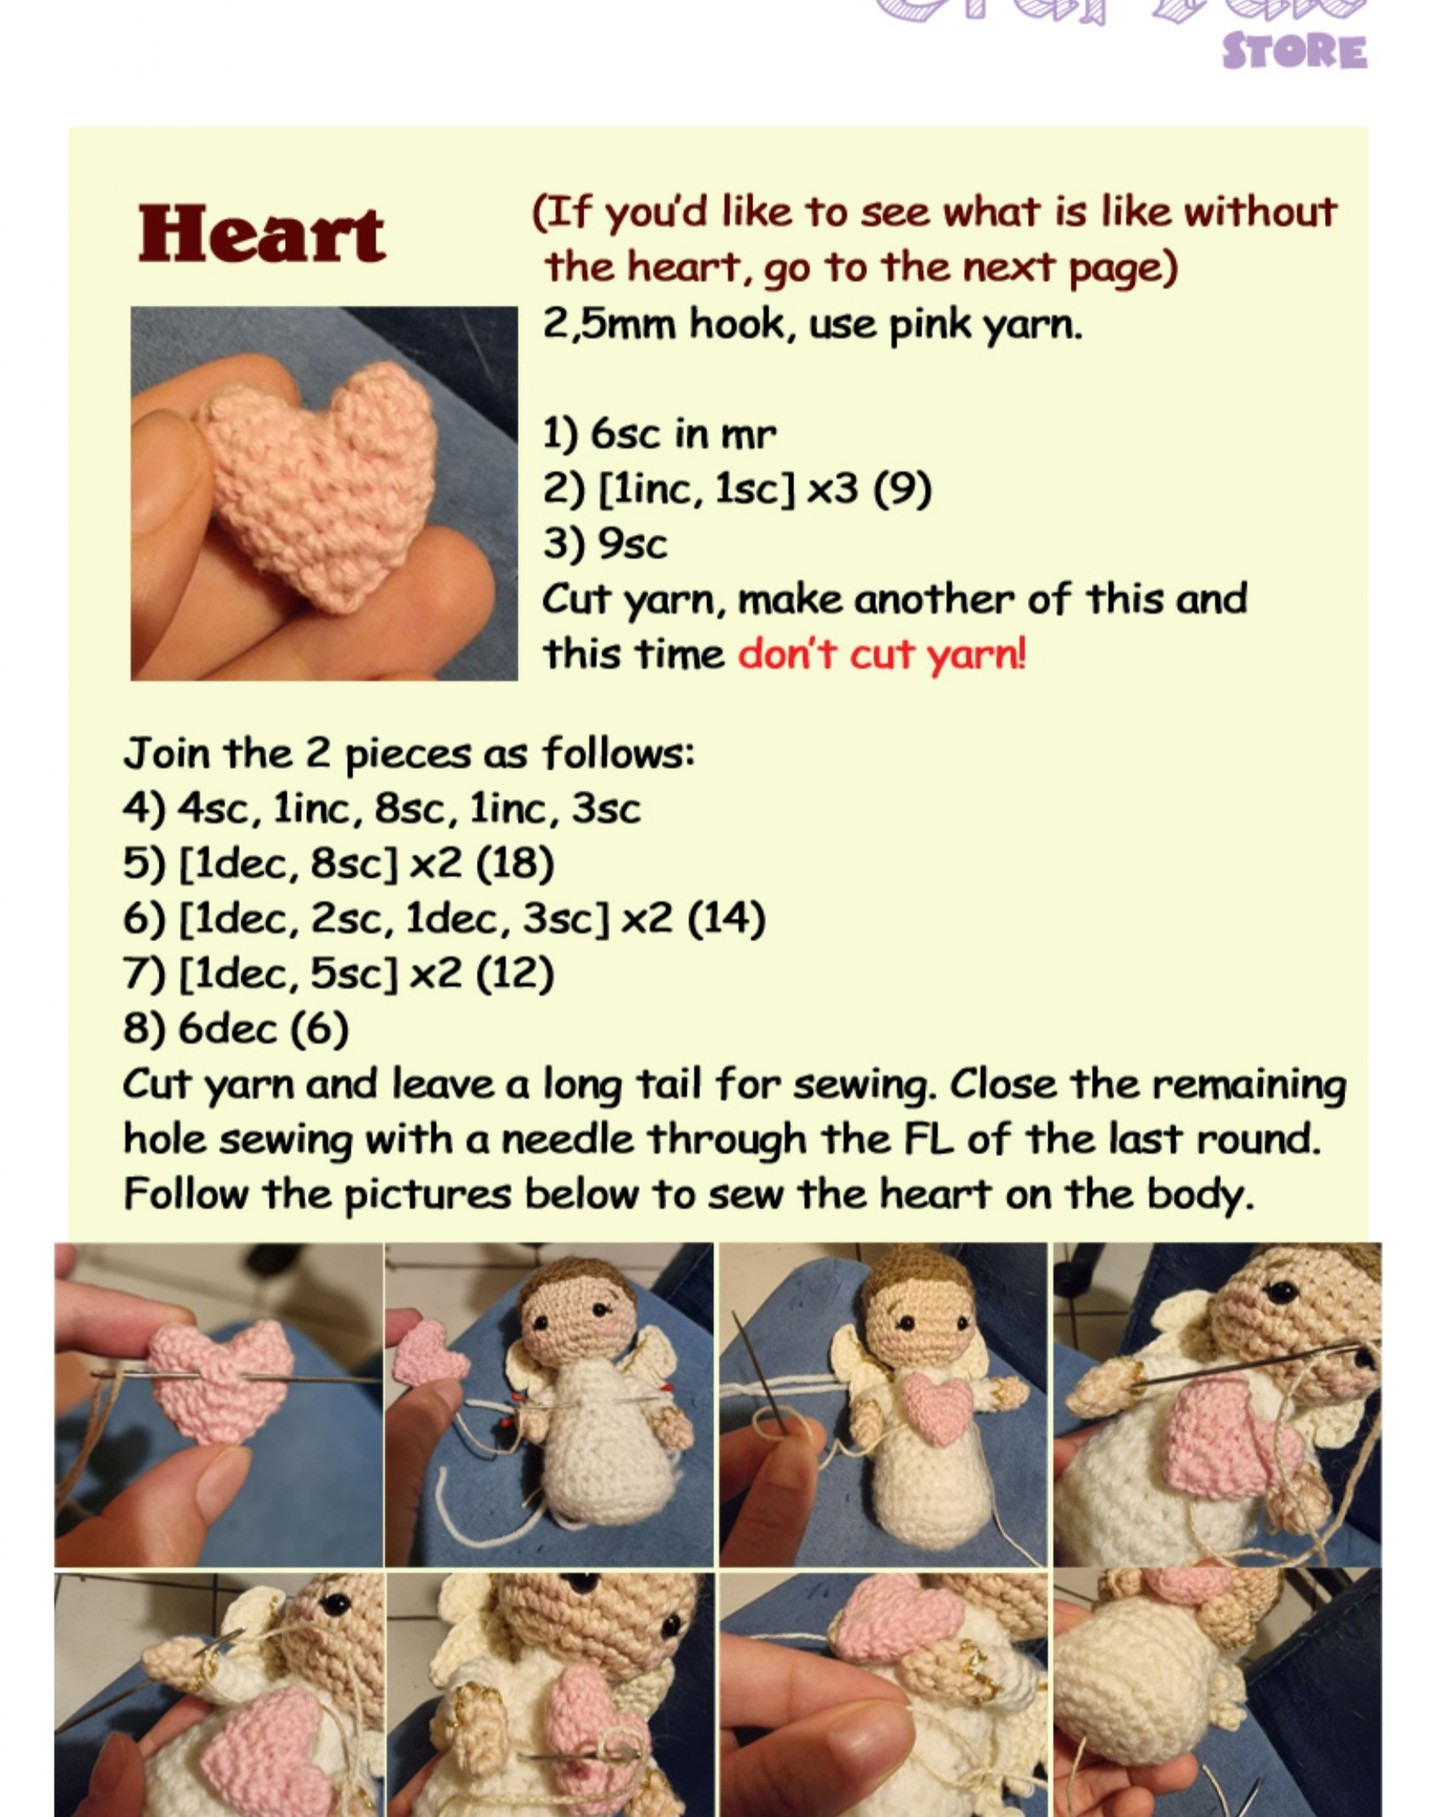 Angel crochet pattern holding hearts.